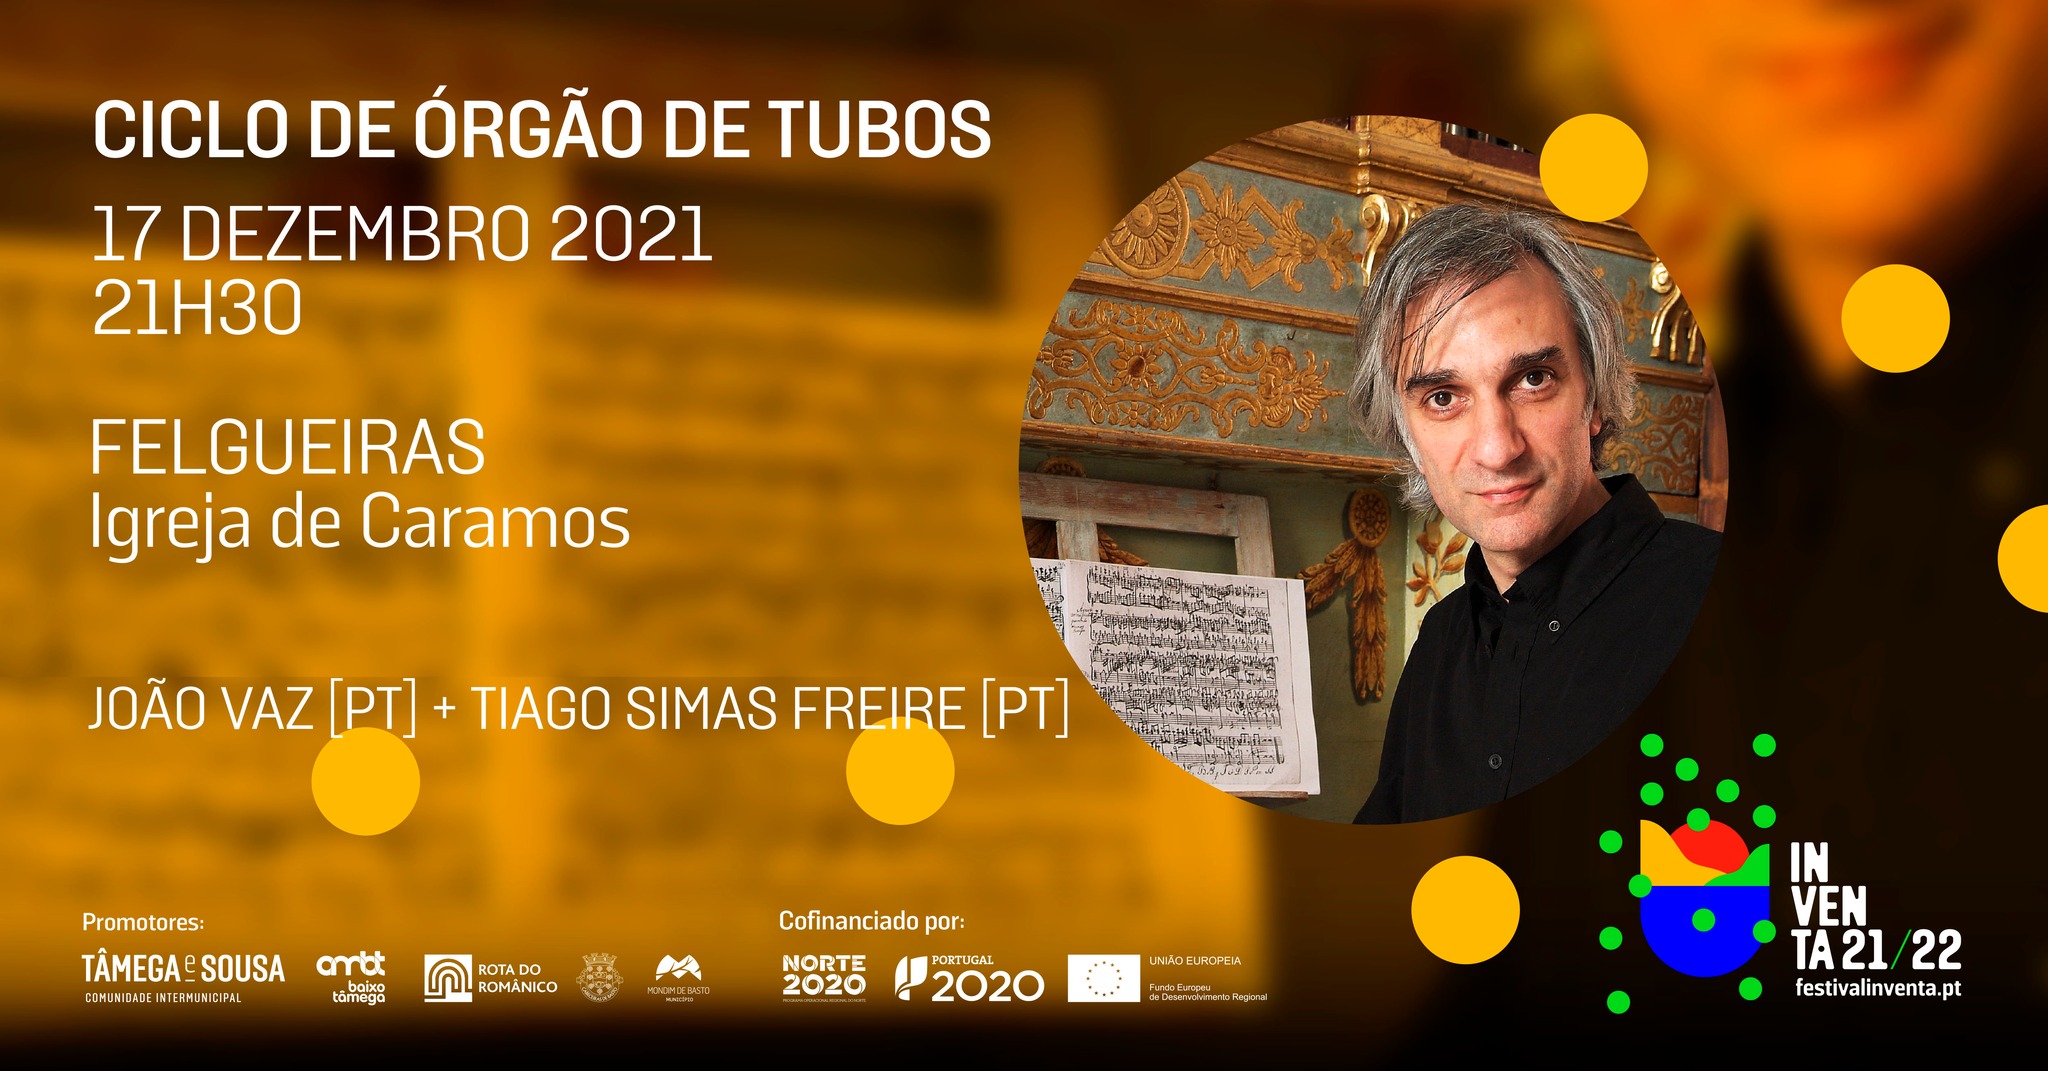 João Vaz [PT] + Tiago Simas Freire [PT] - Ciclo de órgão de tubos - Felgueiras